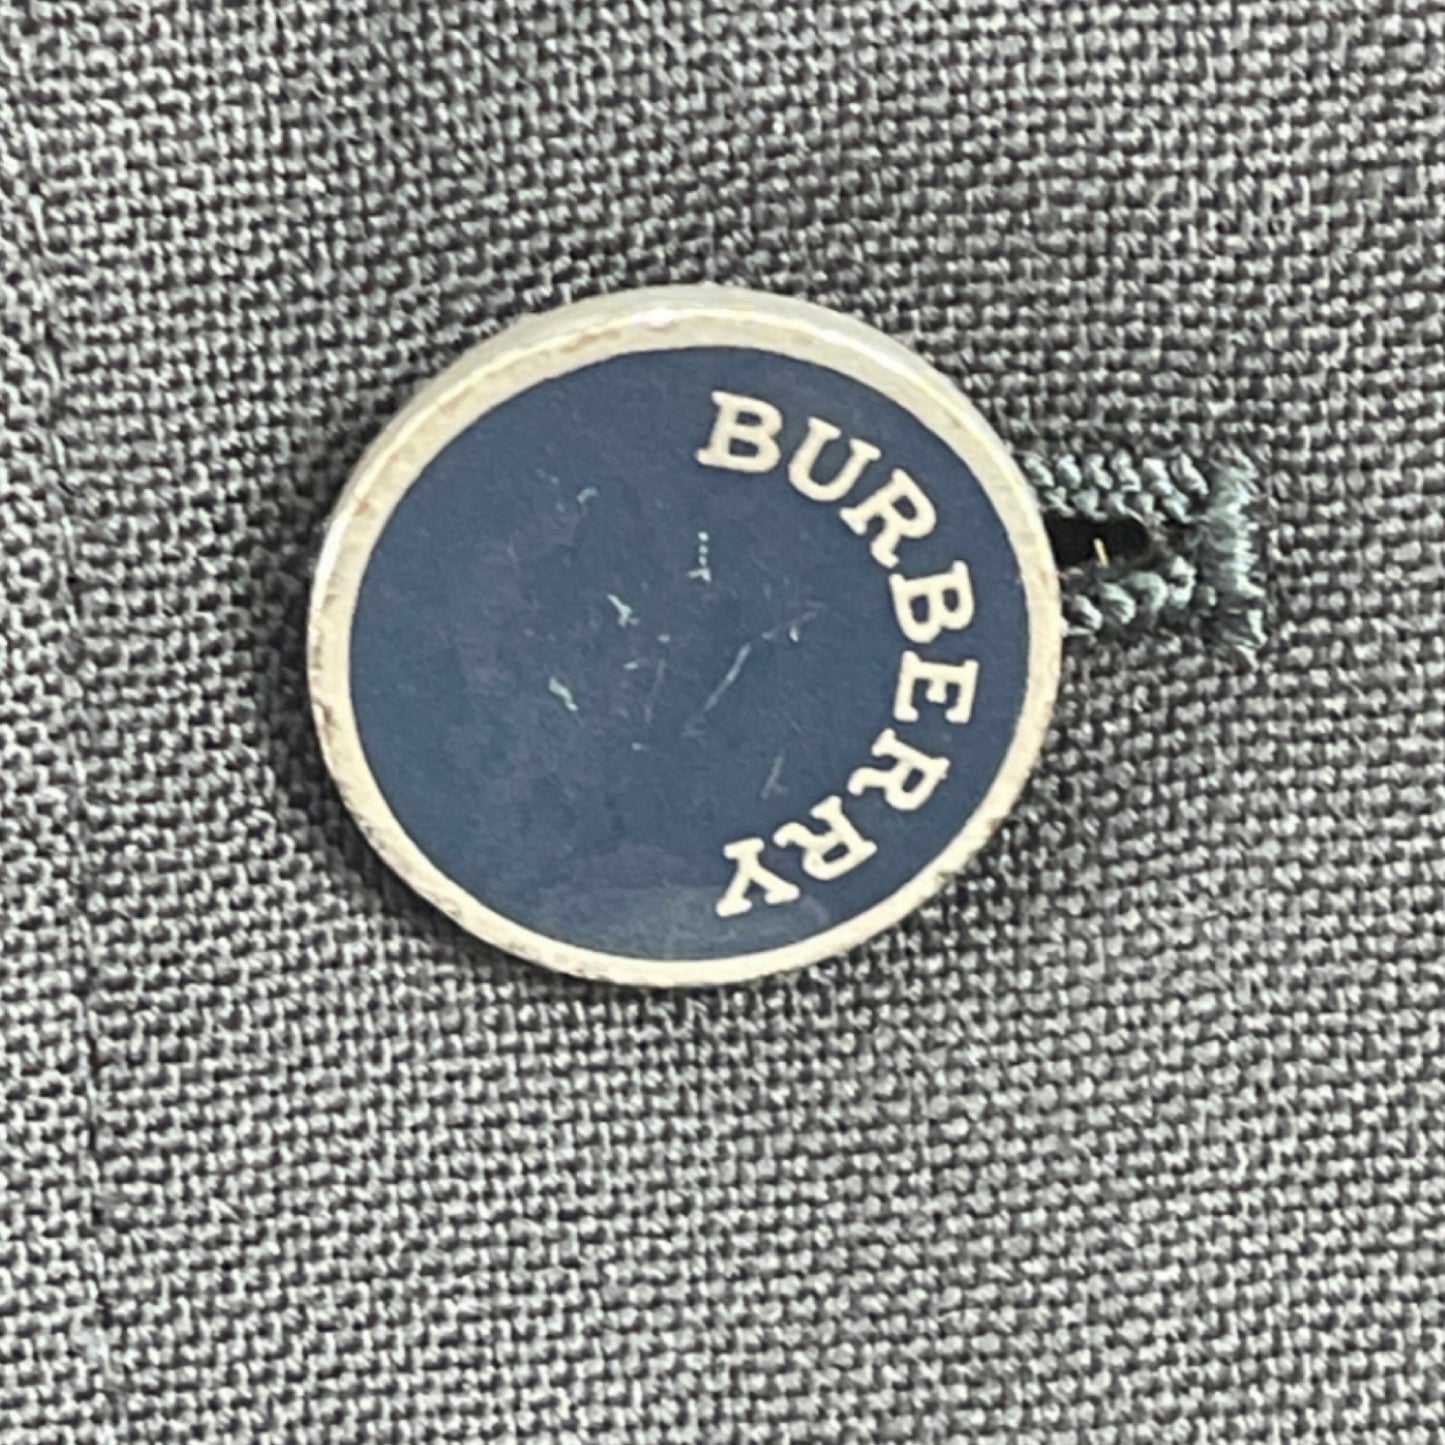 Burberry-Jacke aus frischer extrafeiner Wolle tg. 54 - blau